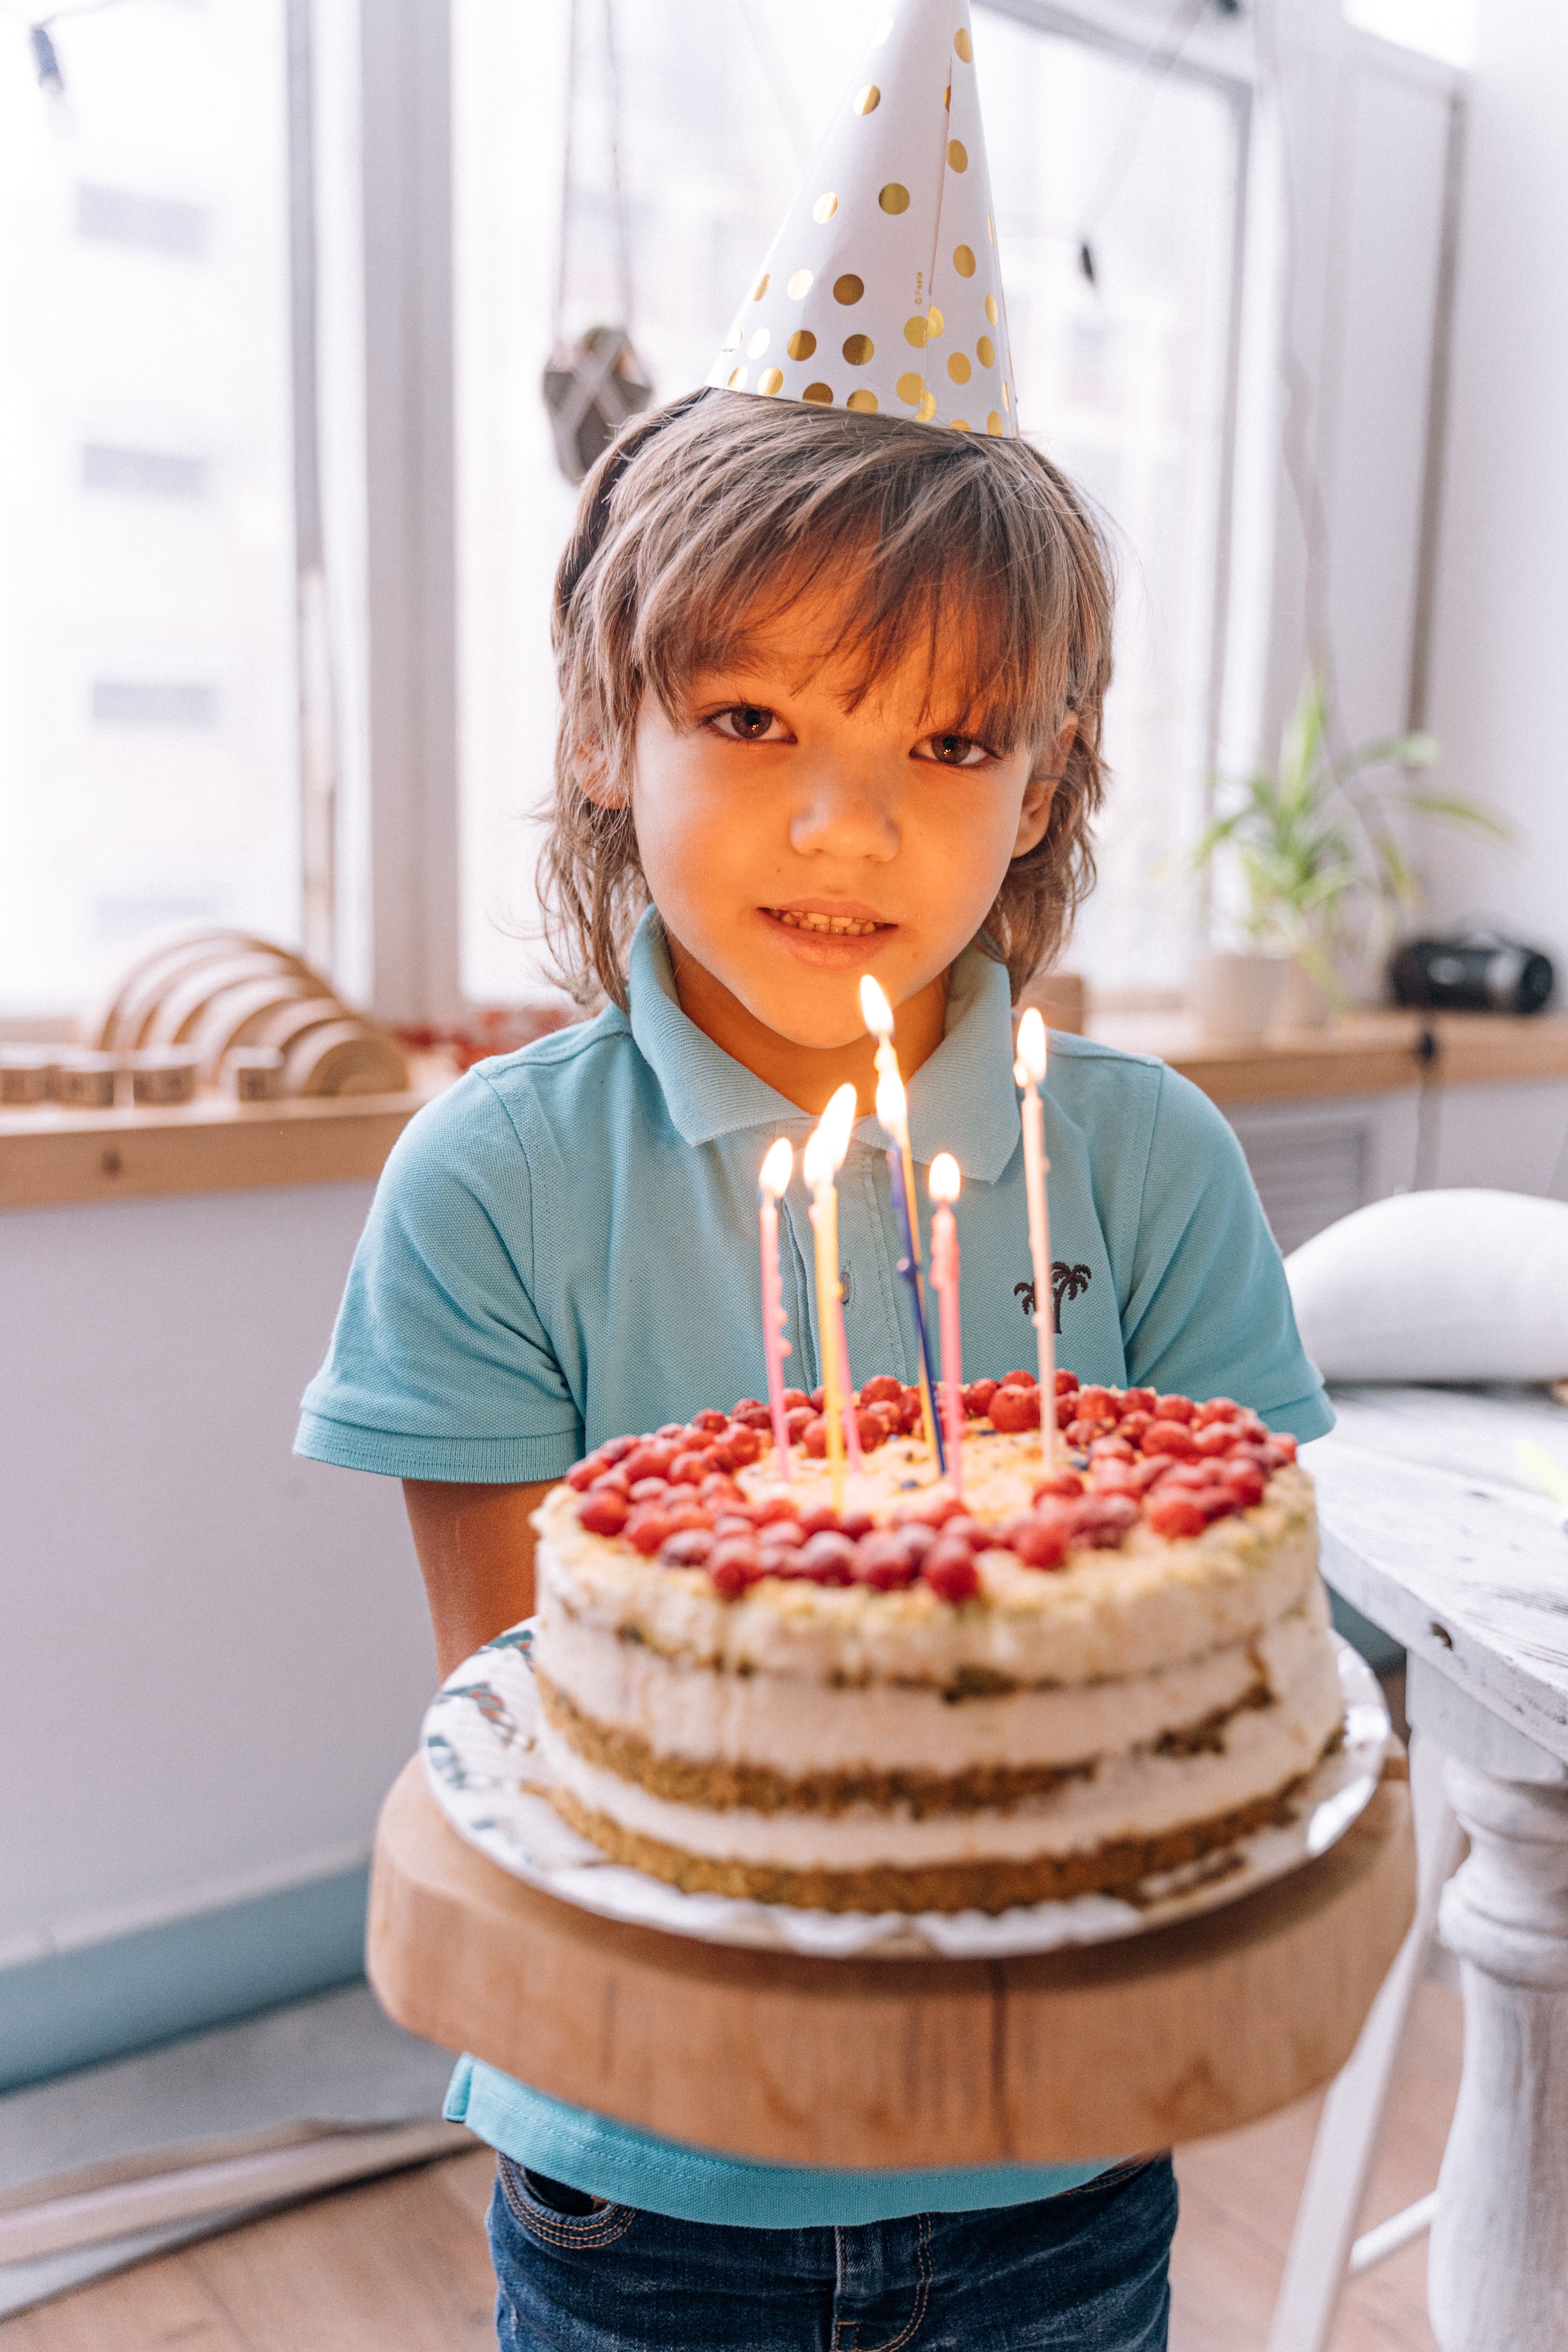 Emily a préparé un gâteau pour l'anniversaire de Charley | Source : Pexels